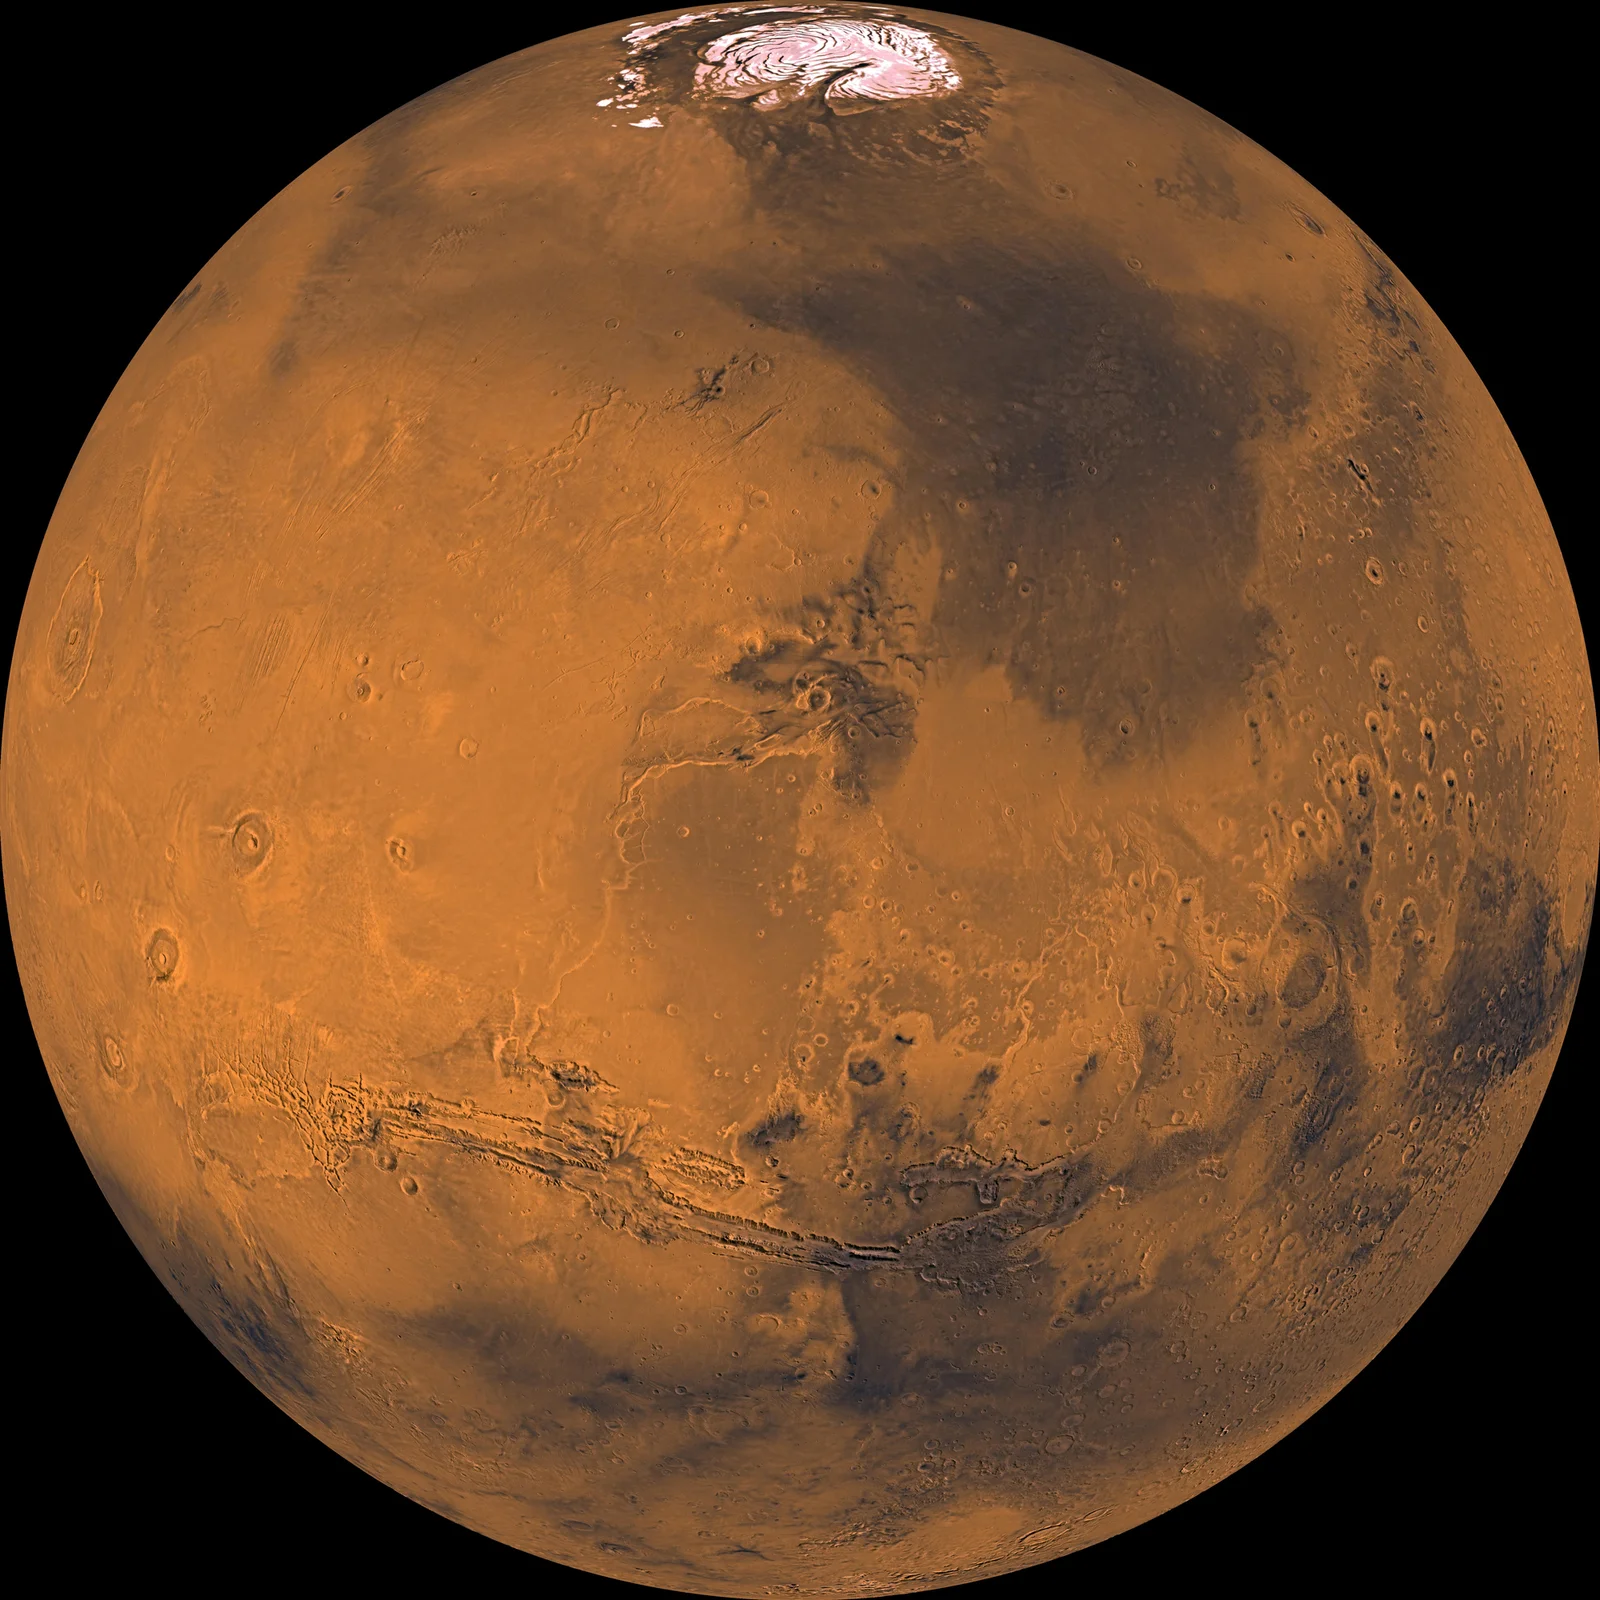 Άρης (Mars) - Εικόνα: NASA/JPL/USGS